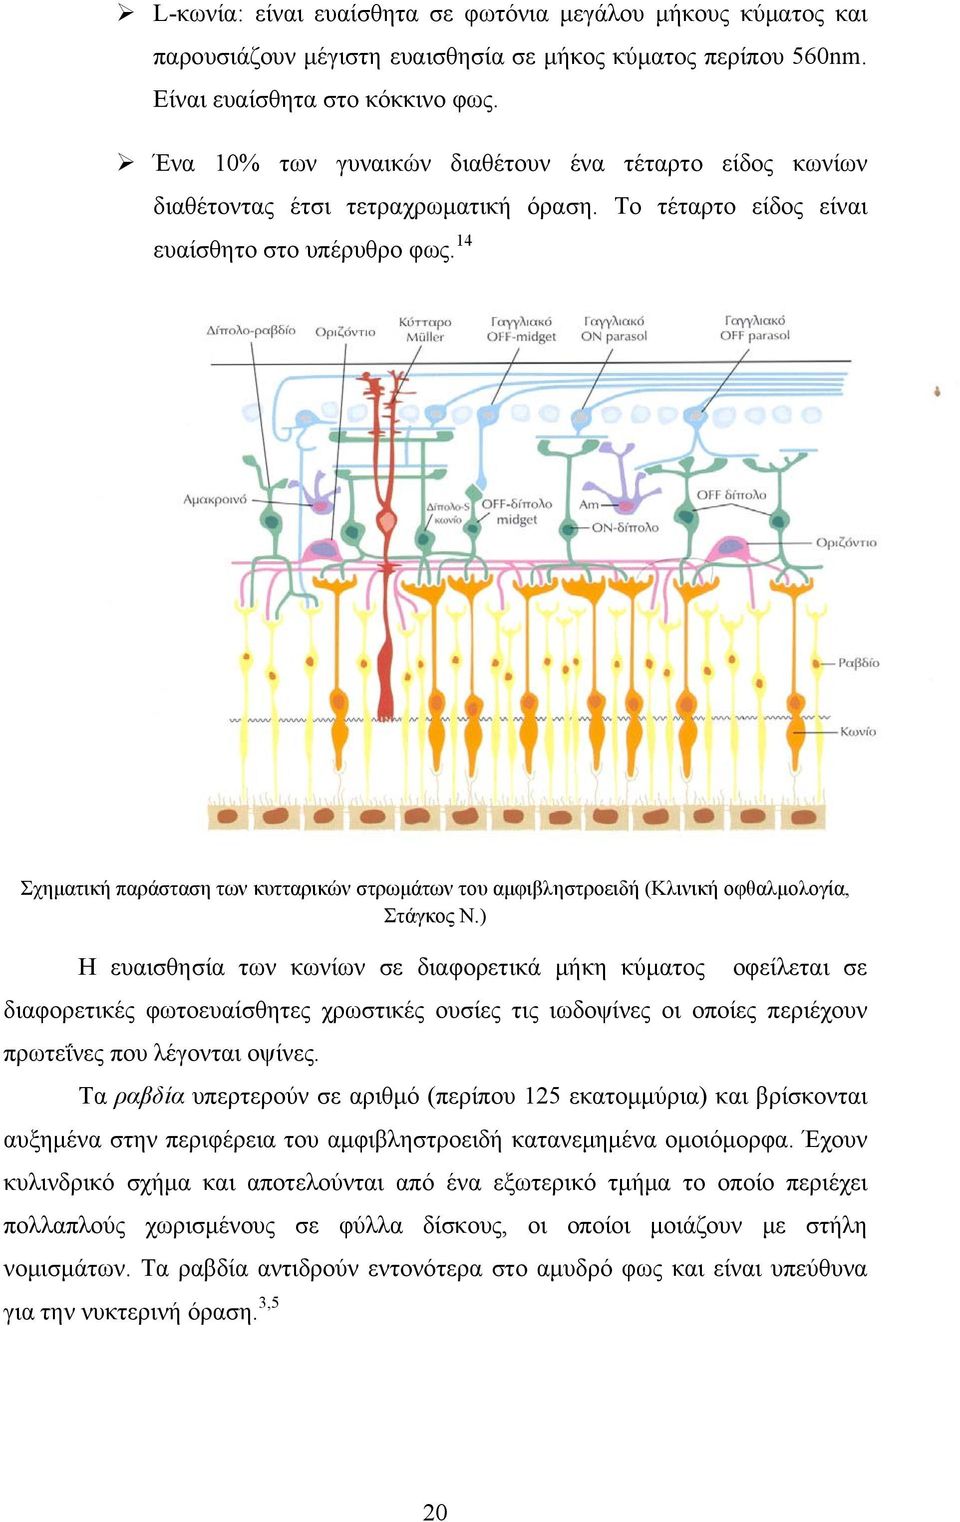 14 Σχηματική παράσταση των κυτταρικών στρωμάτων του αμφιβληστροειδή (Κλινική οφθαλμολογία, Στάγκος Ν.